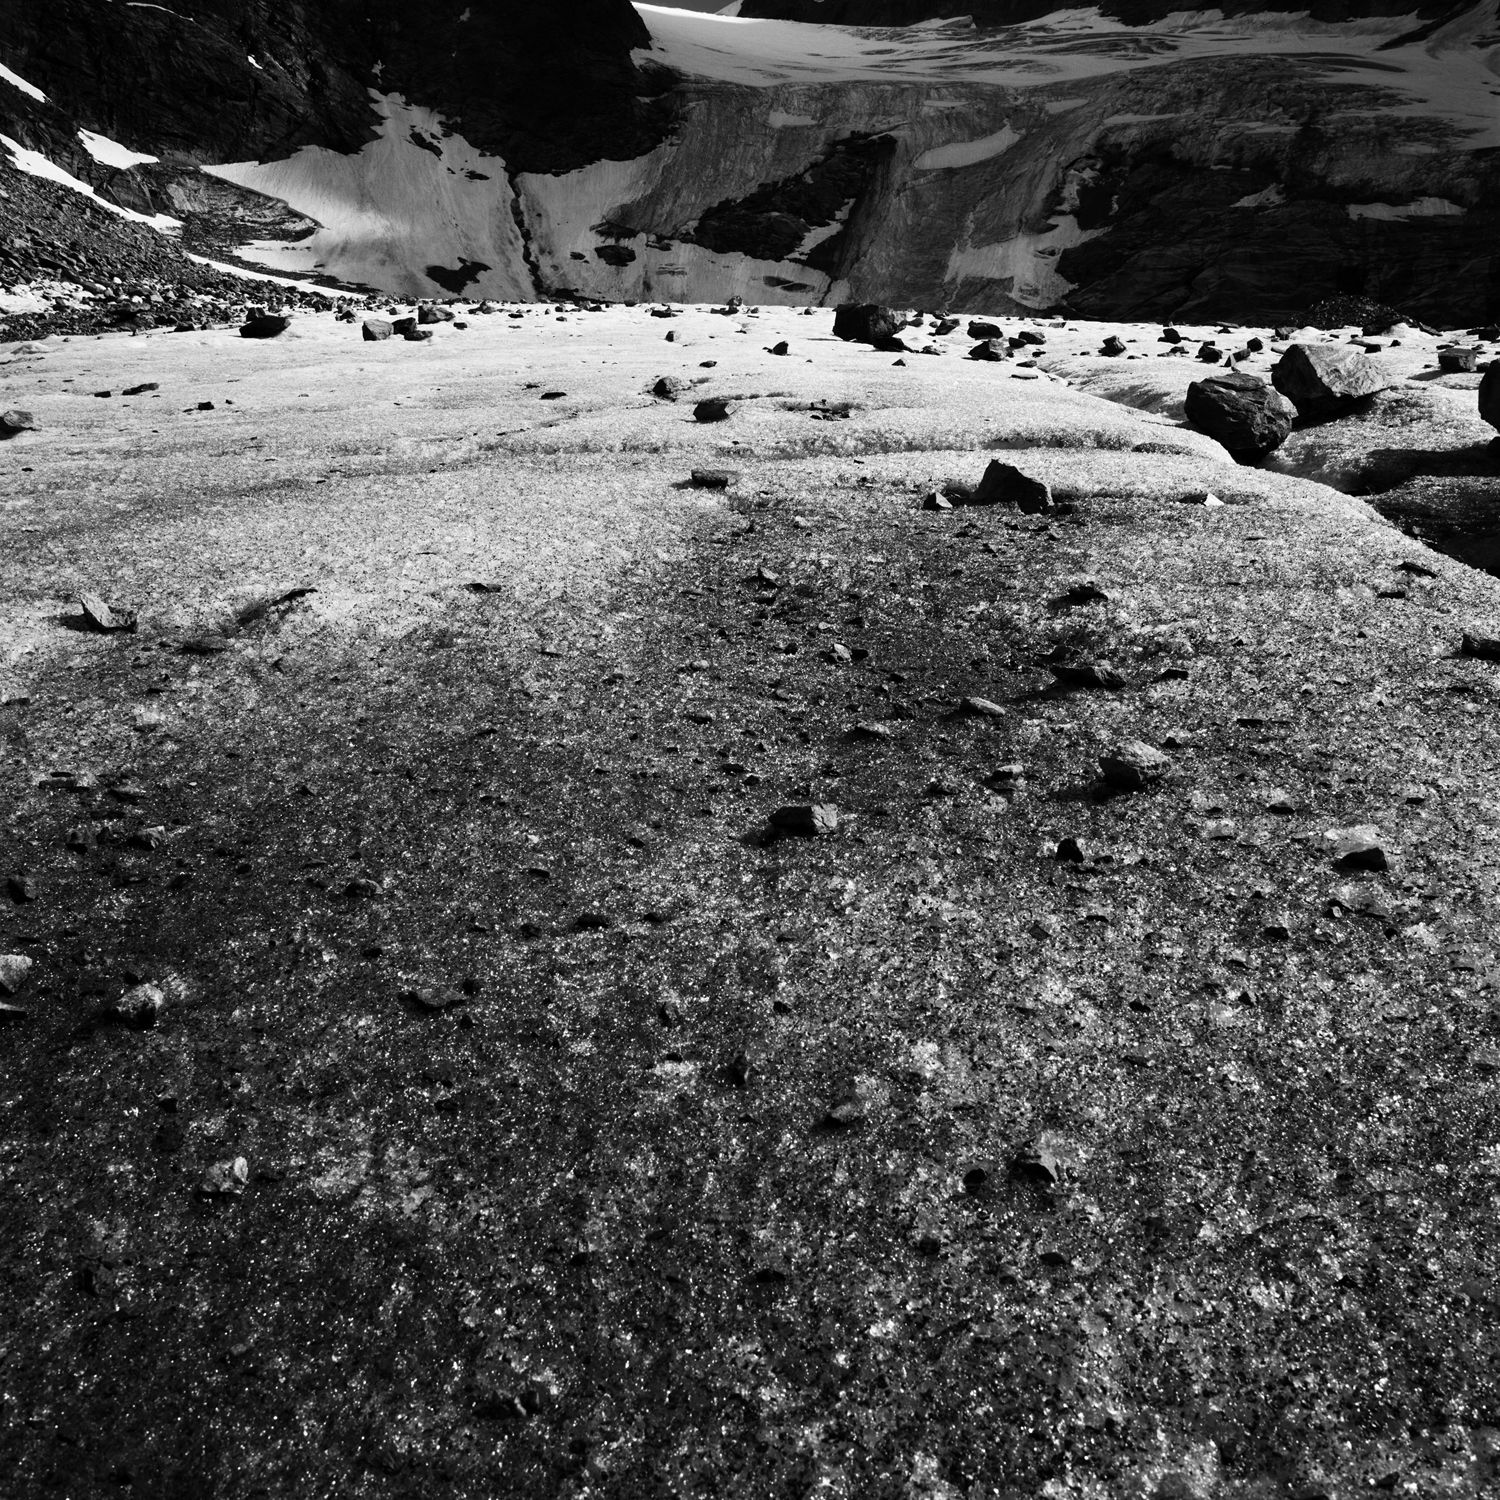 © Hélène Binet 'Formations 2, Graubünden, Switzerland' courtesy ammann//gallery